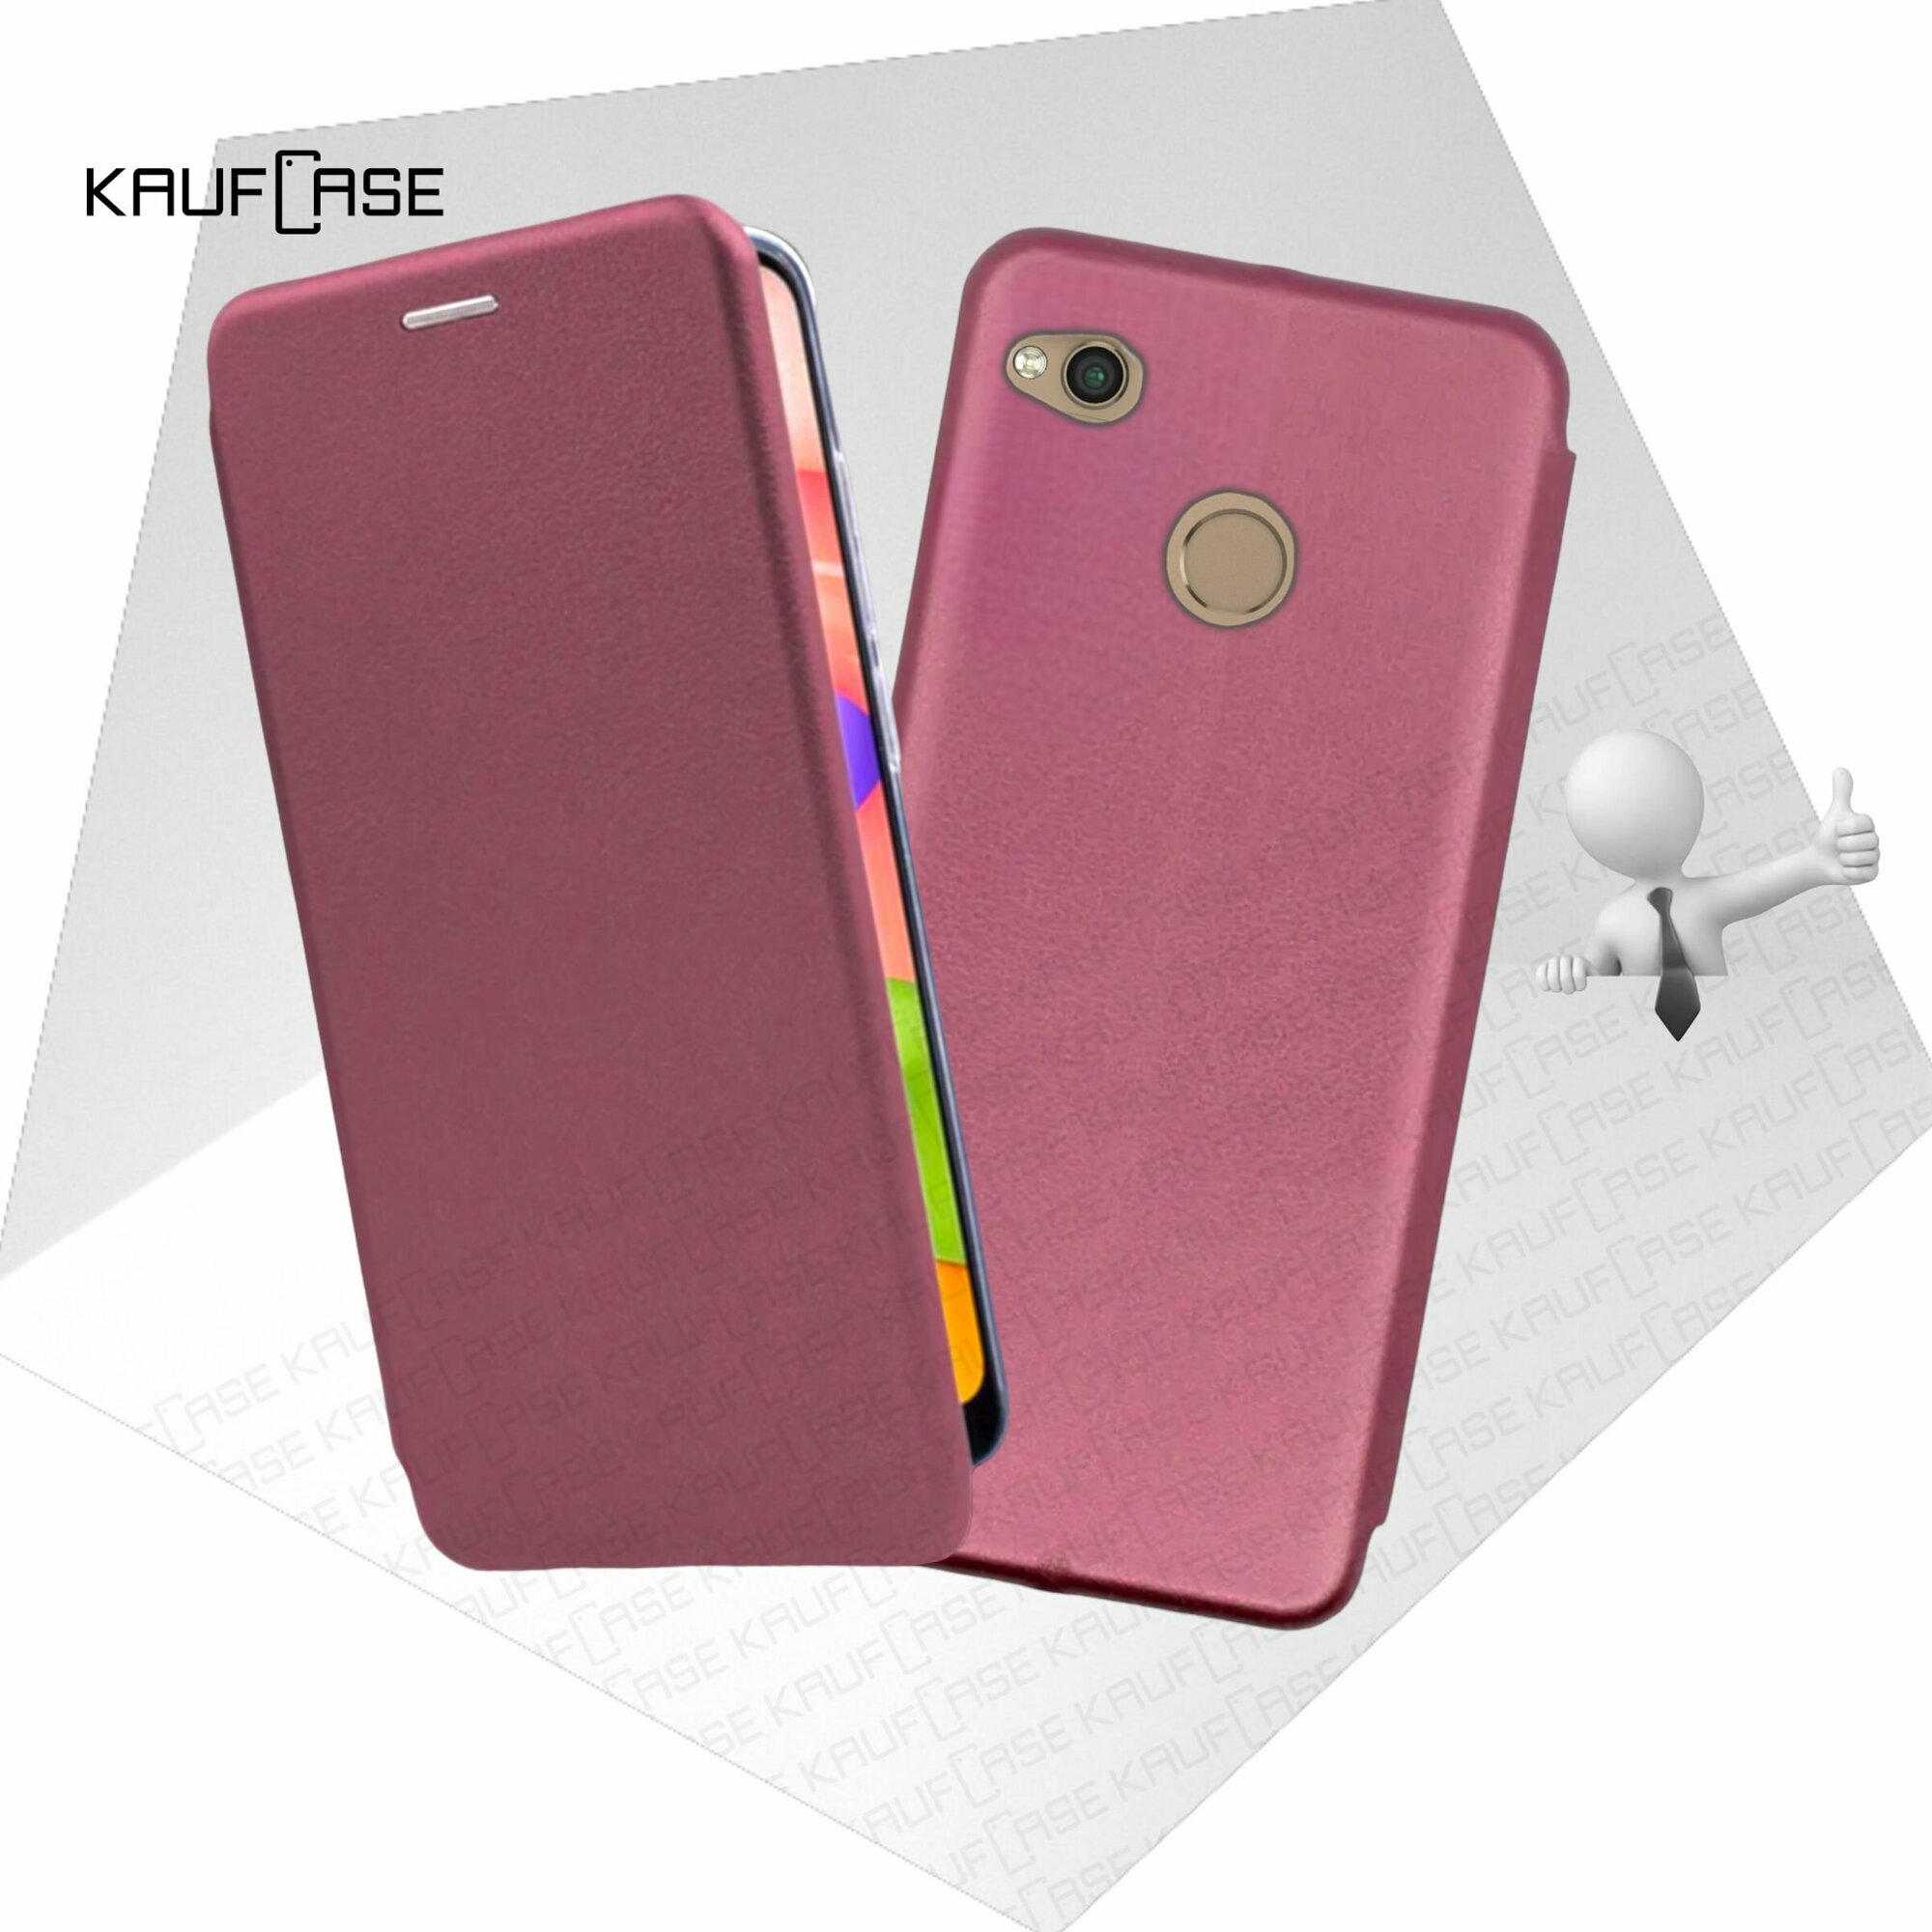 Чехол книжка KaufCase для телефона Xiaomi Redmi 4X (5"), бордовый. Трансфомер